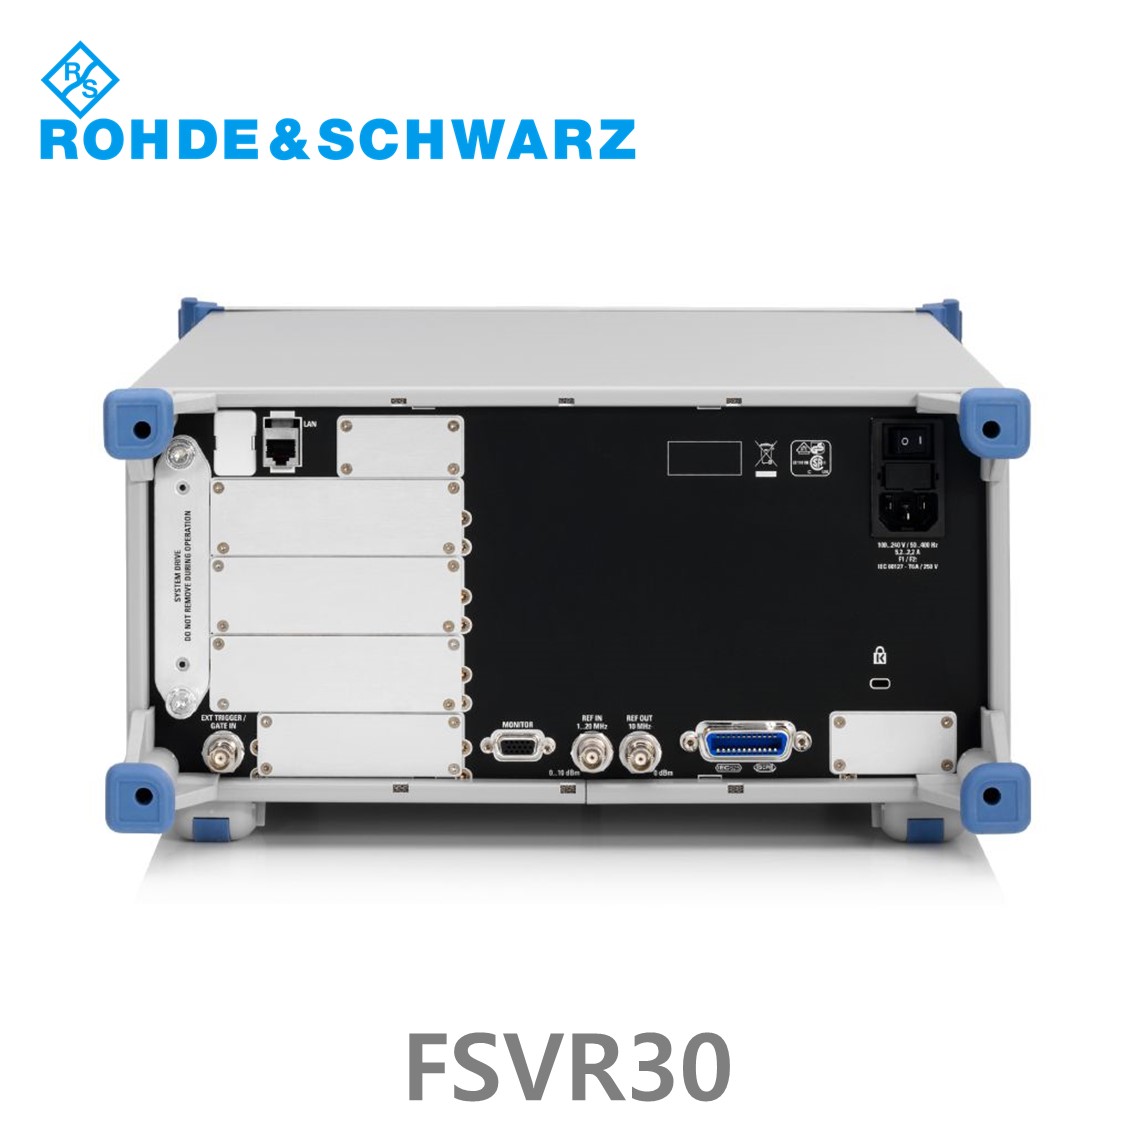 [ 로데슈바르즈 ] FSVR30  10Hz~30GHz, < –106 dBc, < –160 dBm/Hz, 40 MHz (1311.0006.30) 스펙트럼분석기